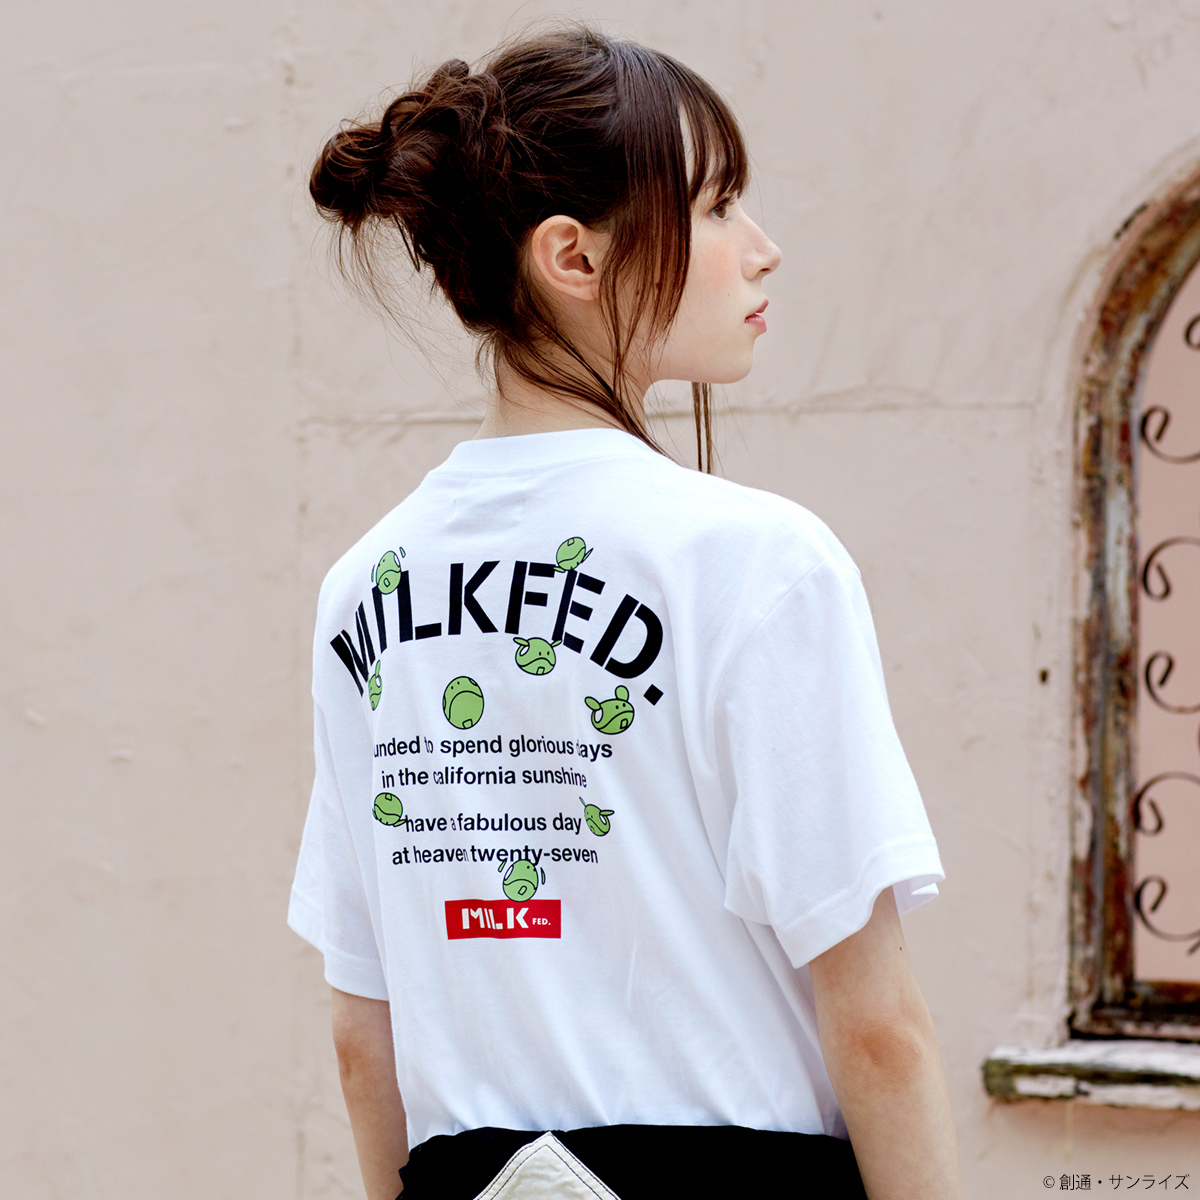 STRICT-G MILKFED.『機動戦士ガンダム』 Tシャツ ハロ バックロゴ